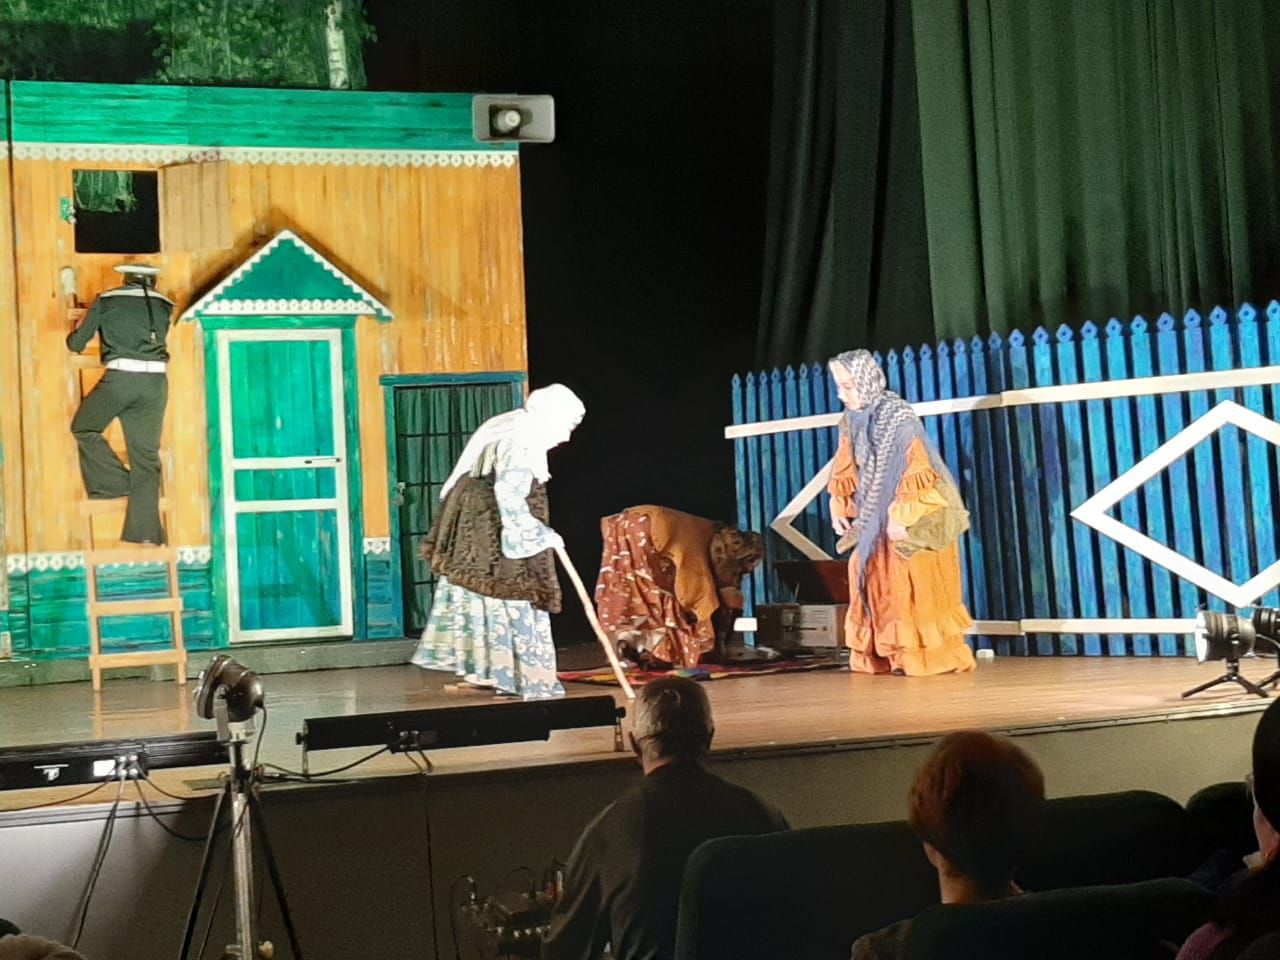 В Заинске прошел показ спектакля «Кыз урлау» («Похищение девушки») драматурга Мустая Карима